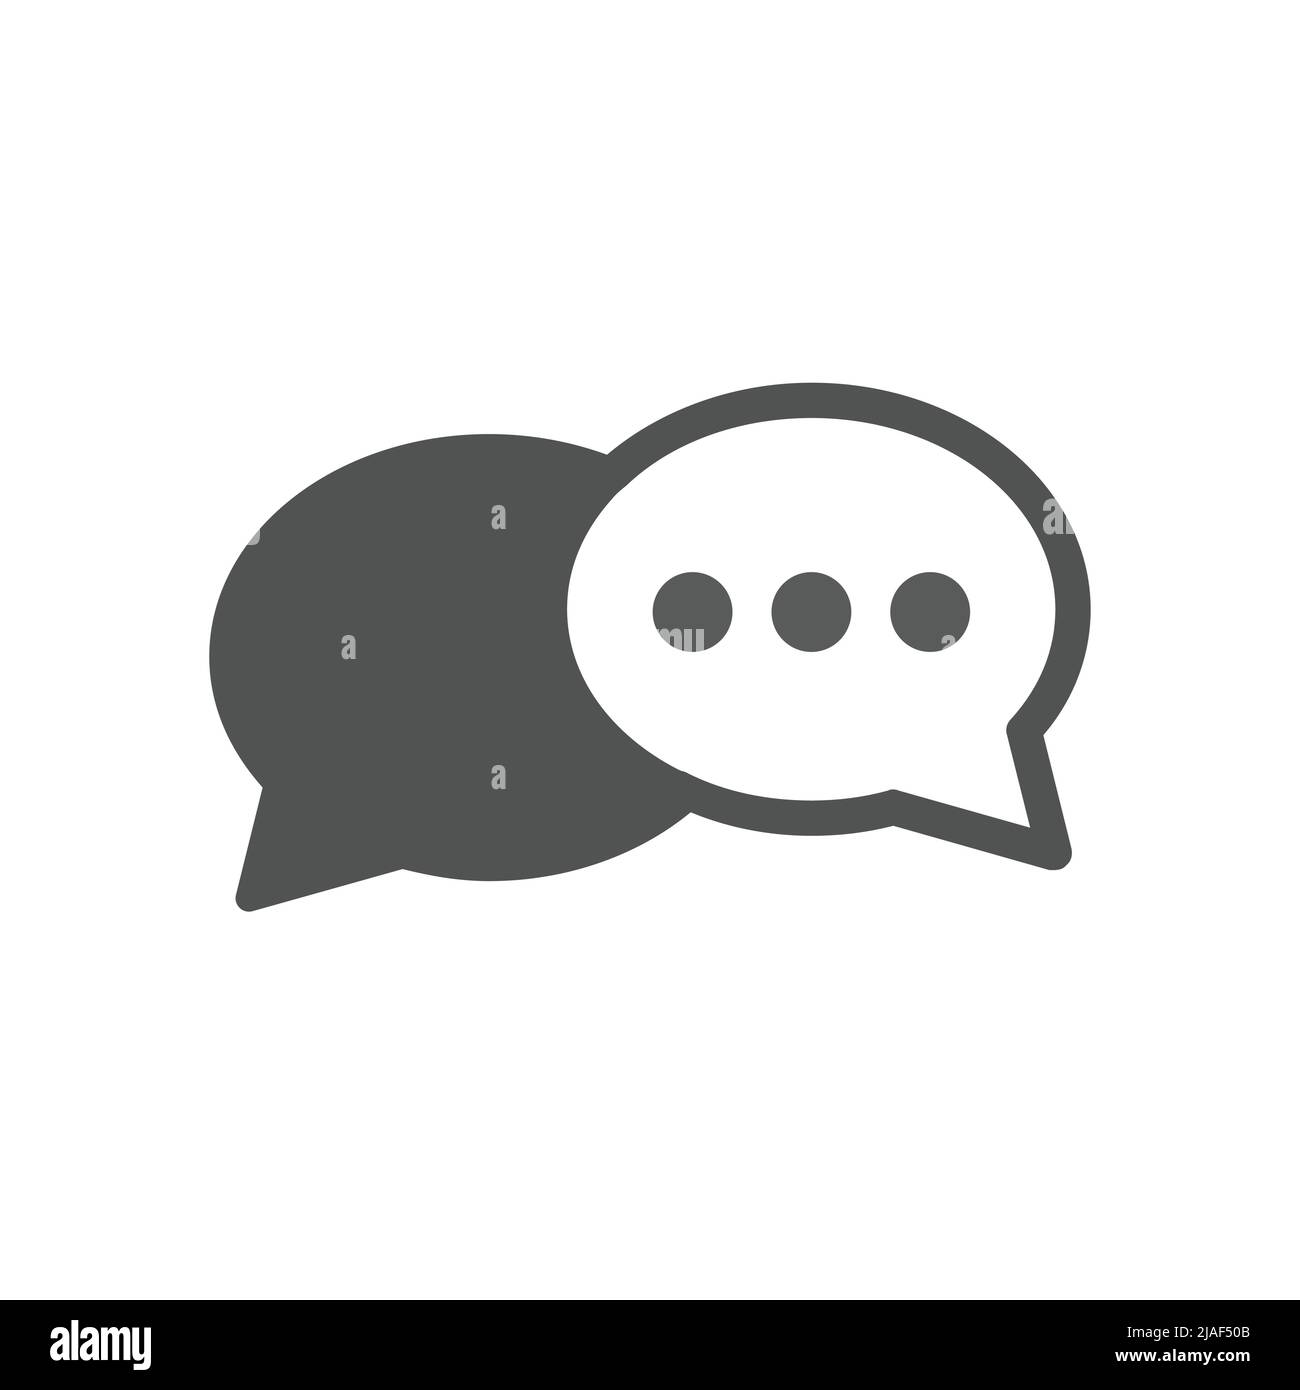 Icona vettoriale nero fumetto vocale impostata. Fumetto chat, icone di contatto riempite. Illustrazione Vettoriale